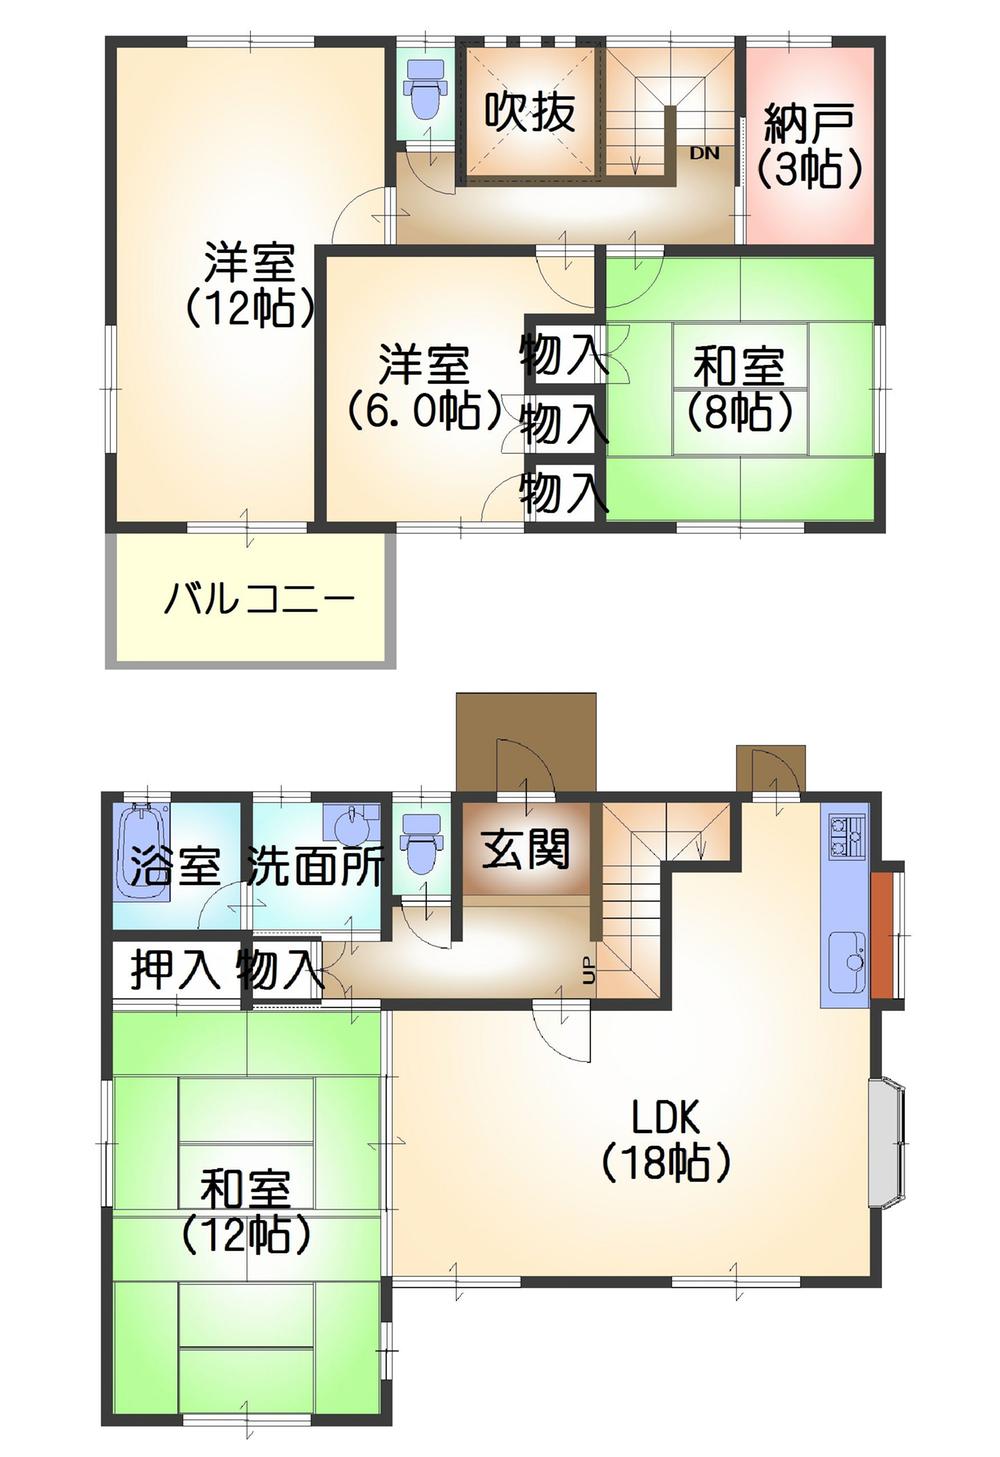 Floor plan. 30,700,000 yen, 4LDK + S (storeroom), Land area 274.7 sq m , Building area 130.83 sq m